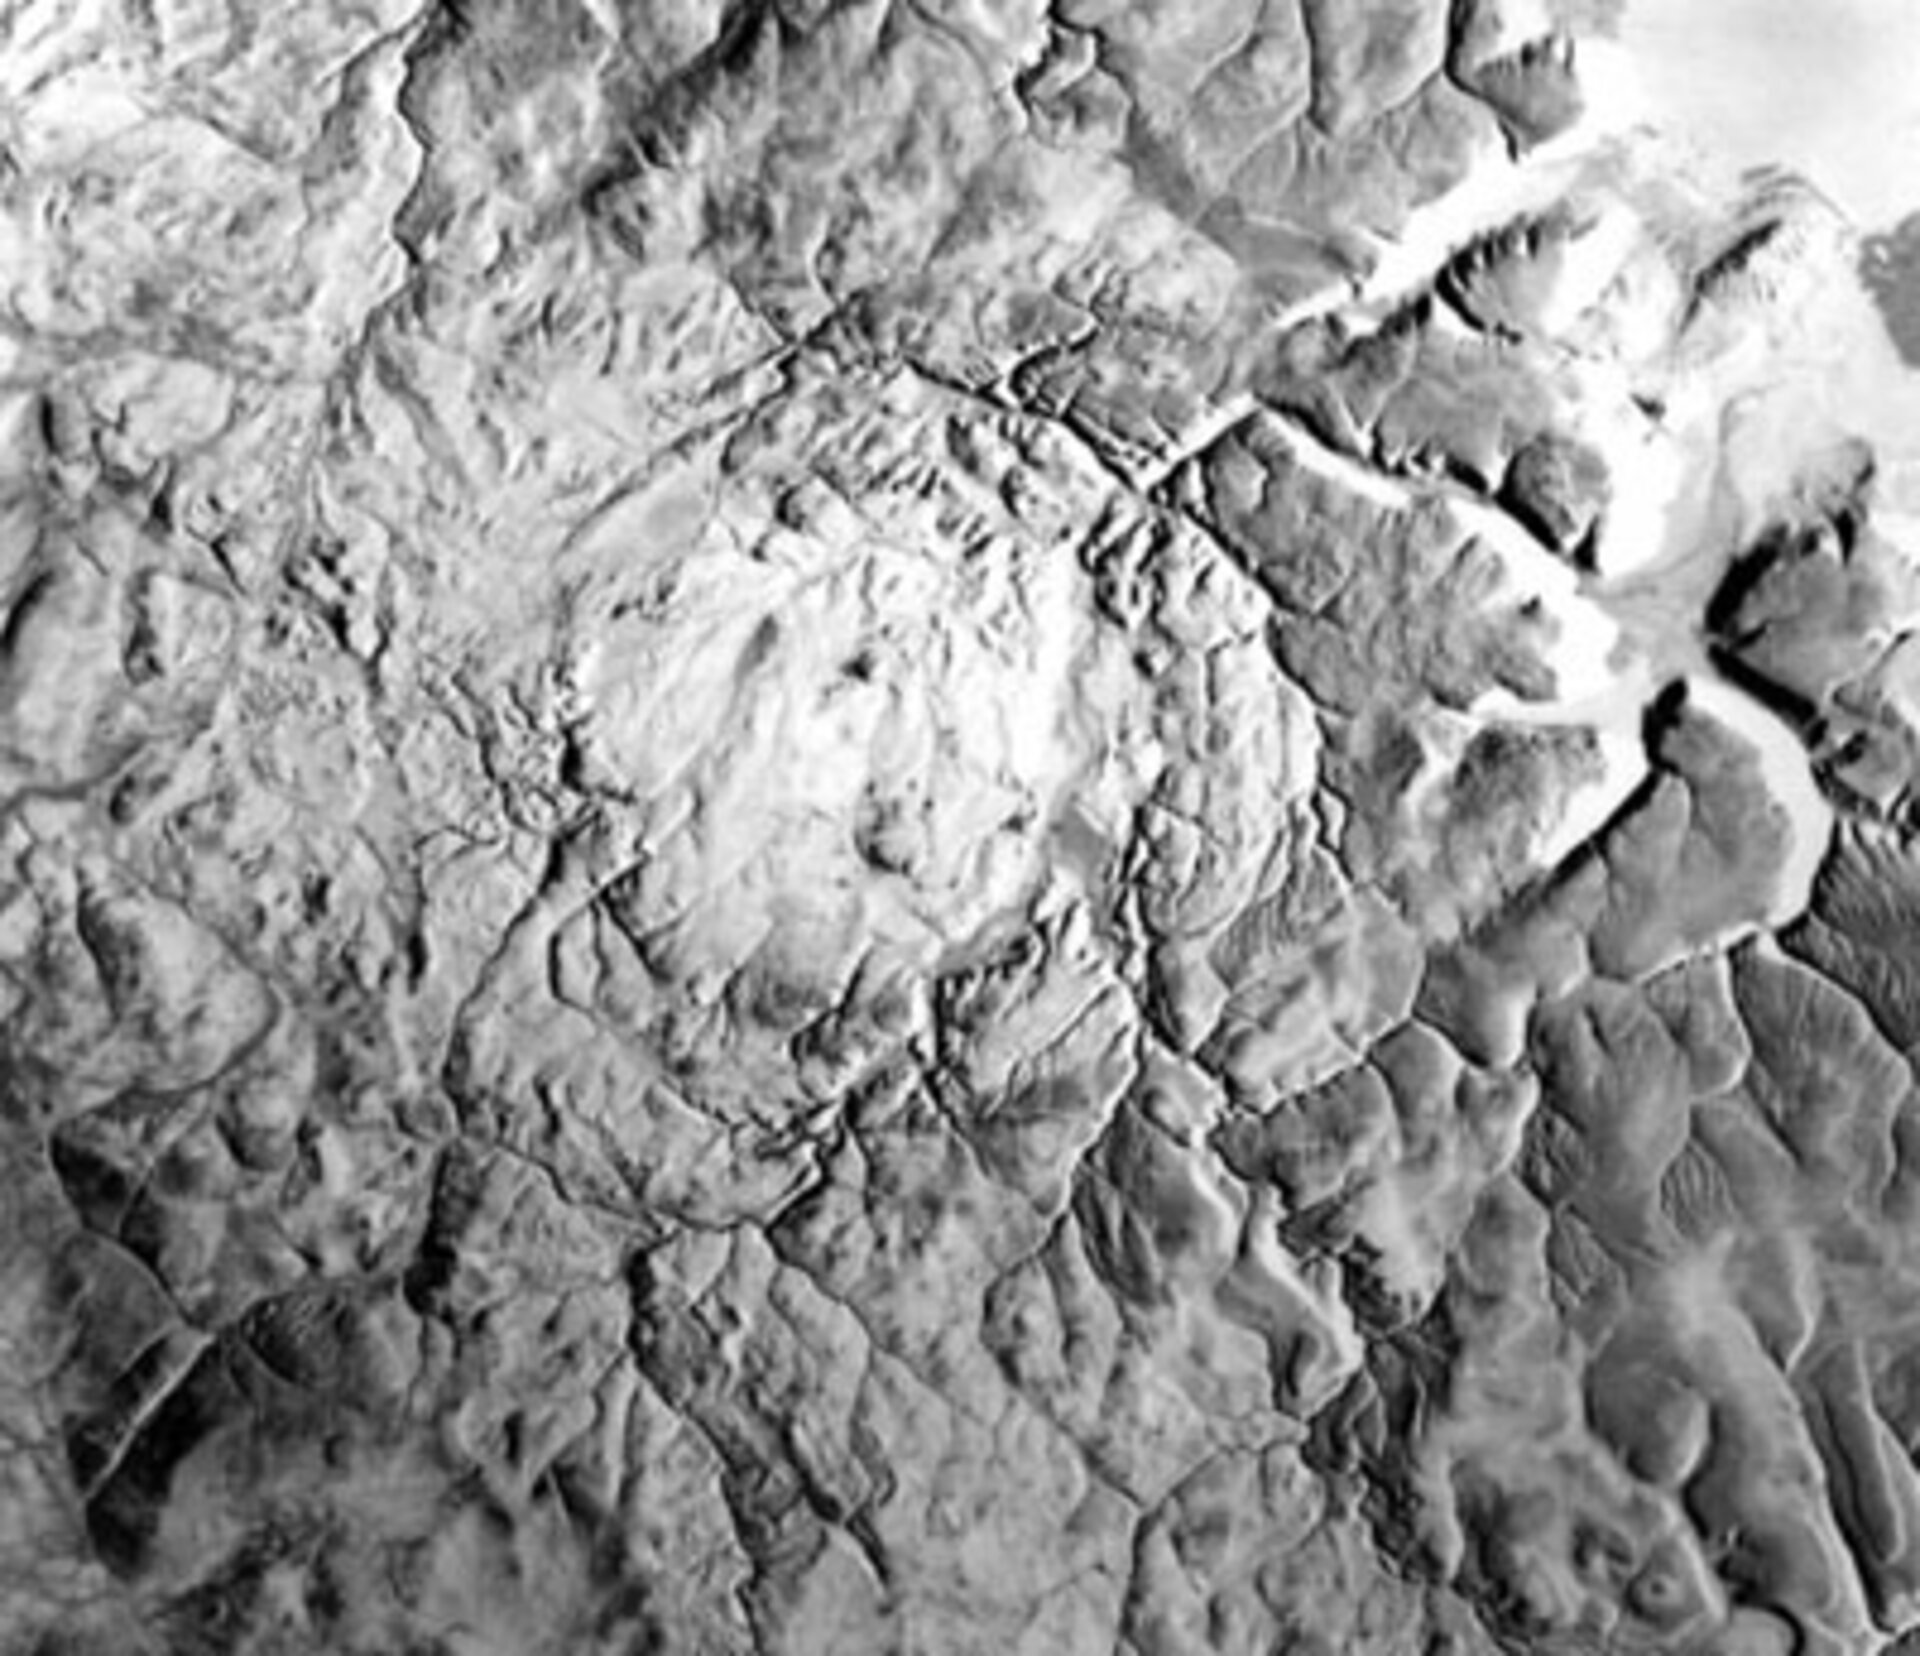 Haughton Crater